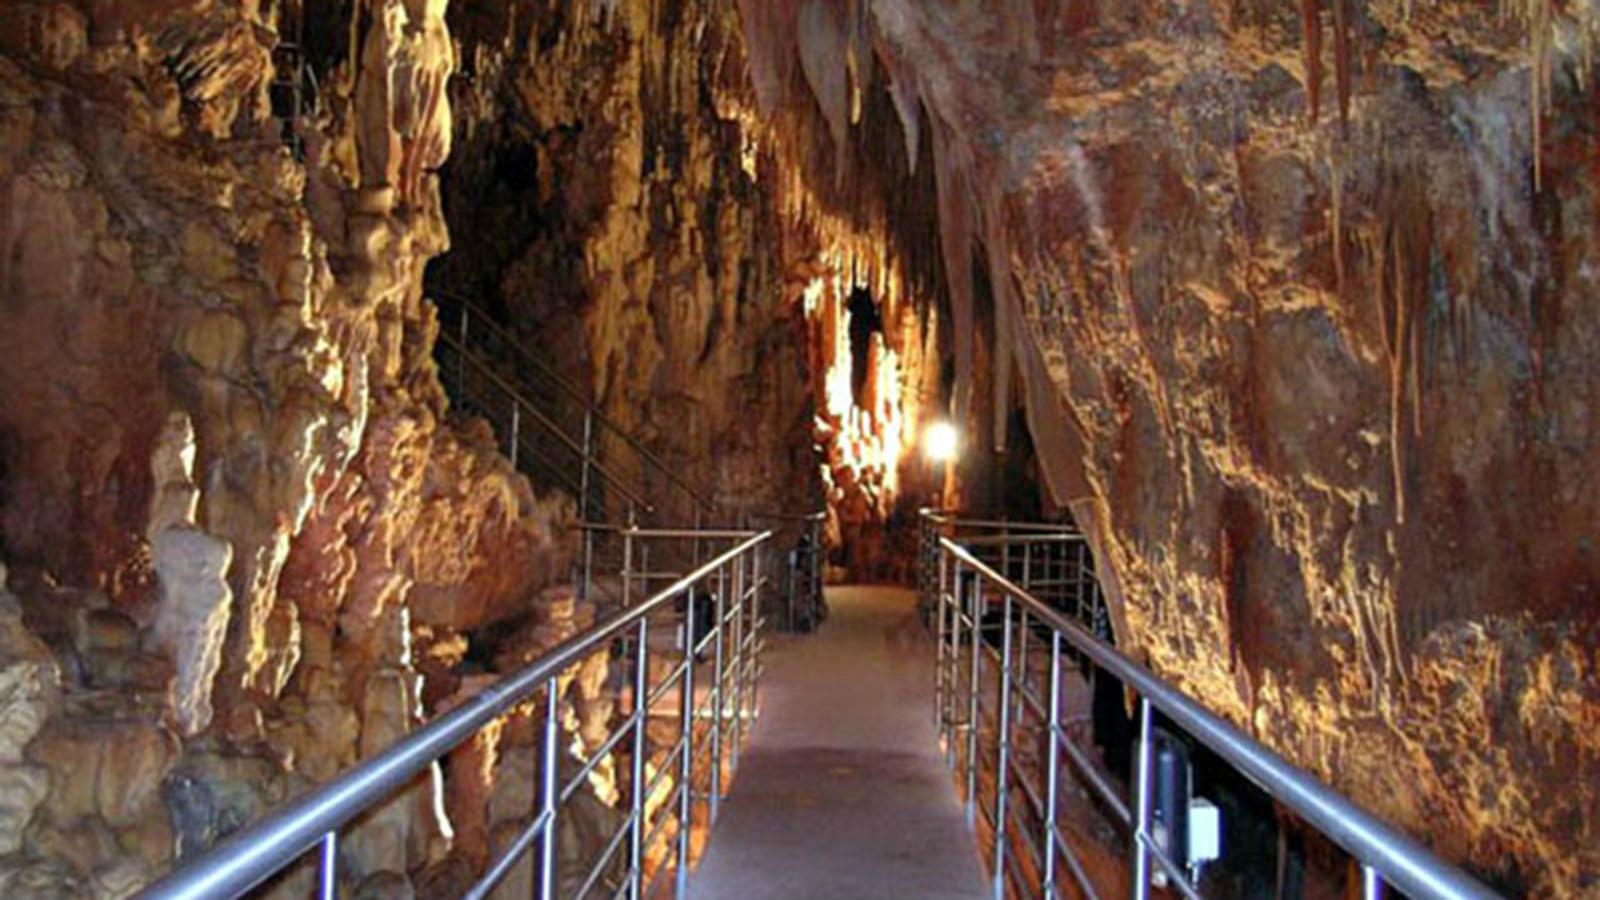 Το πρόγραμμα λειτουργίας του μοναδικού σπηλαίου της Καστανιάς Λακωνίας